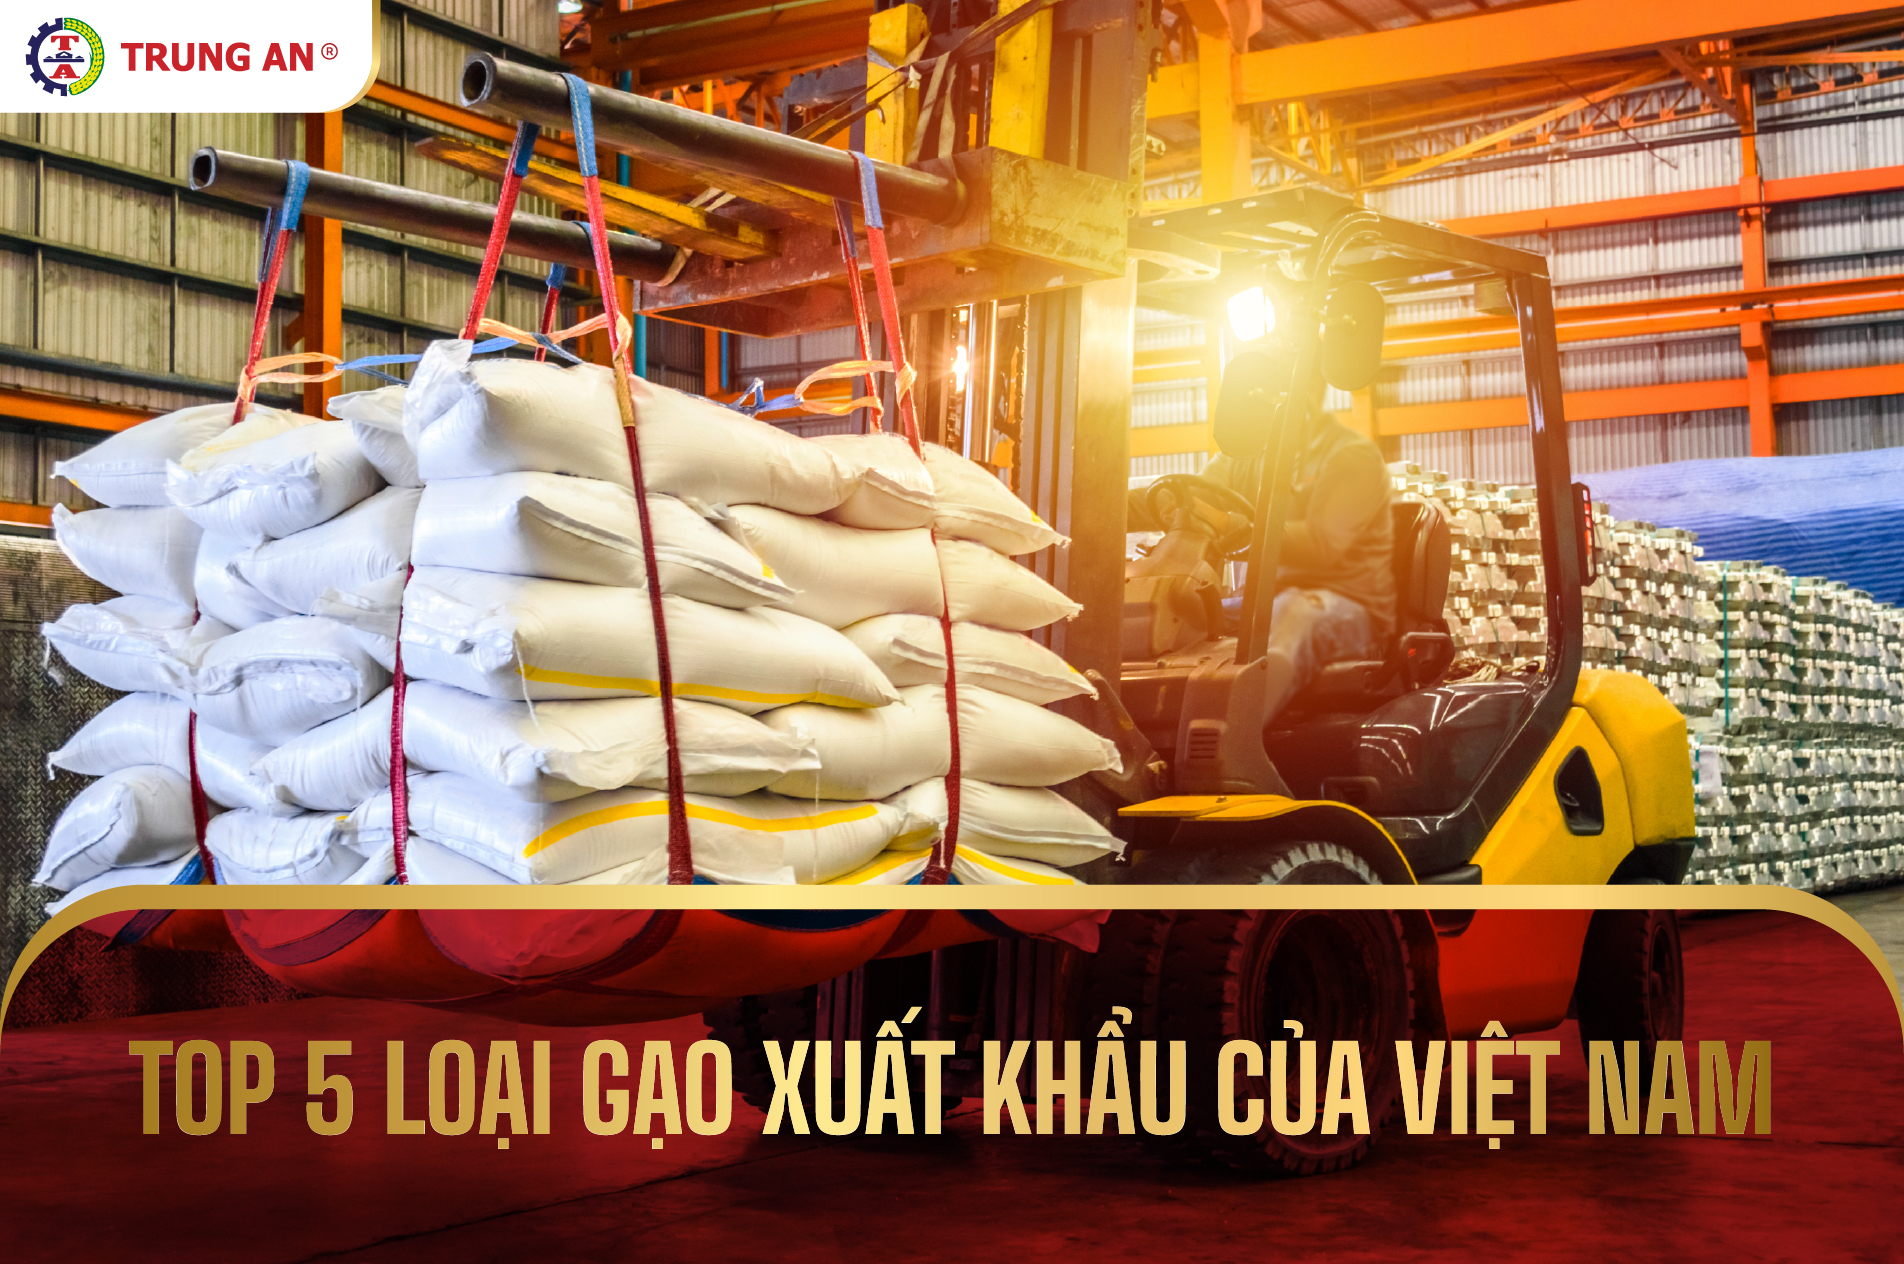 Top 5 các loại gạo xuất khẩu của Việt Nam